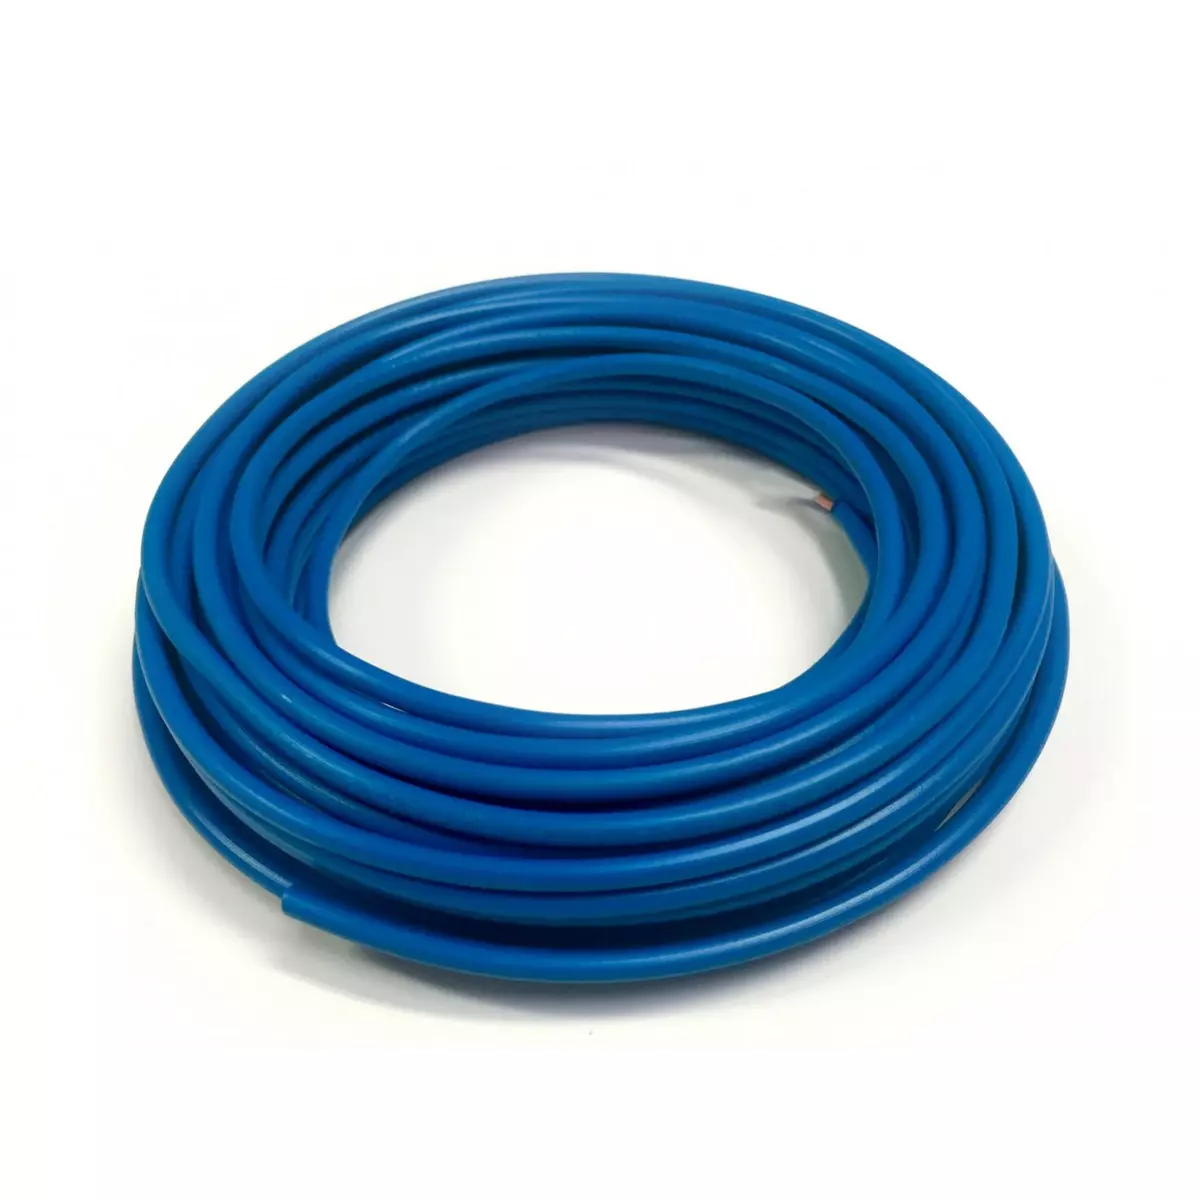 CENTRALE BRICO Fil électrique 1.5 mm² h07vu, en couronne de 10M bleu